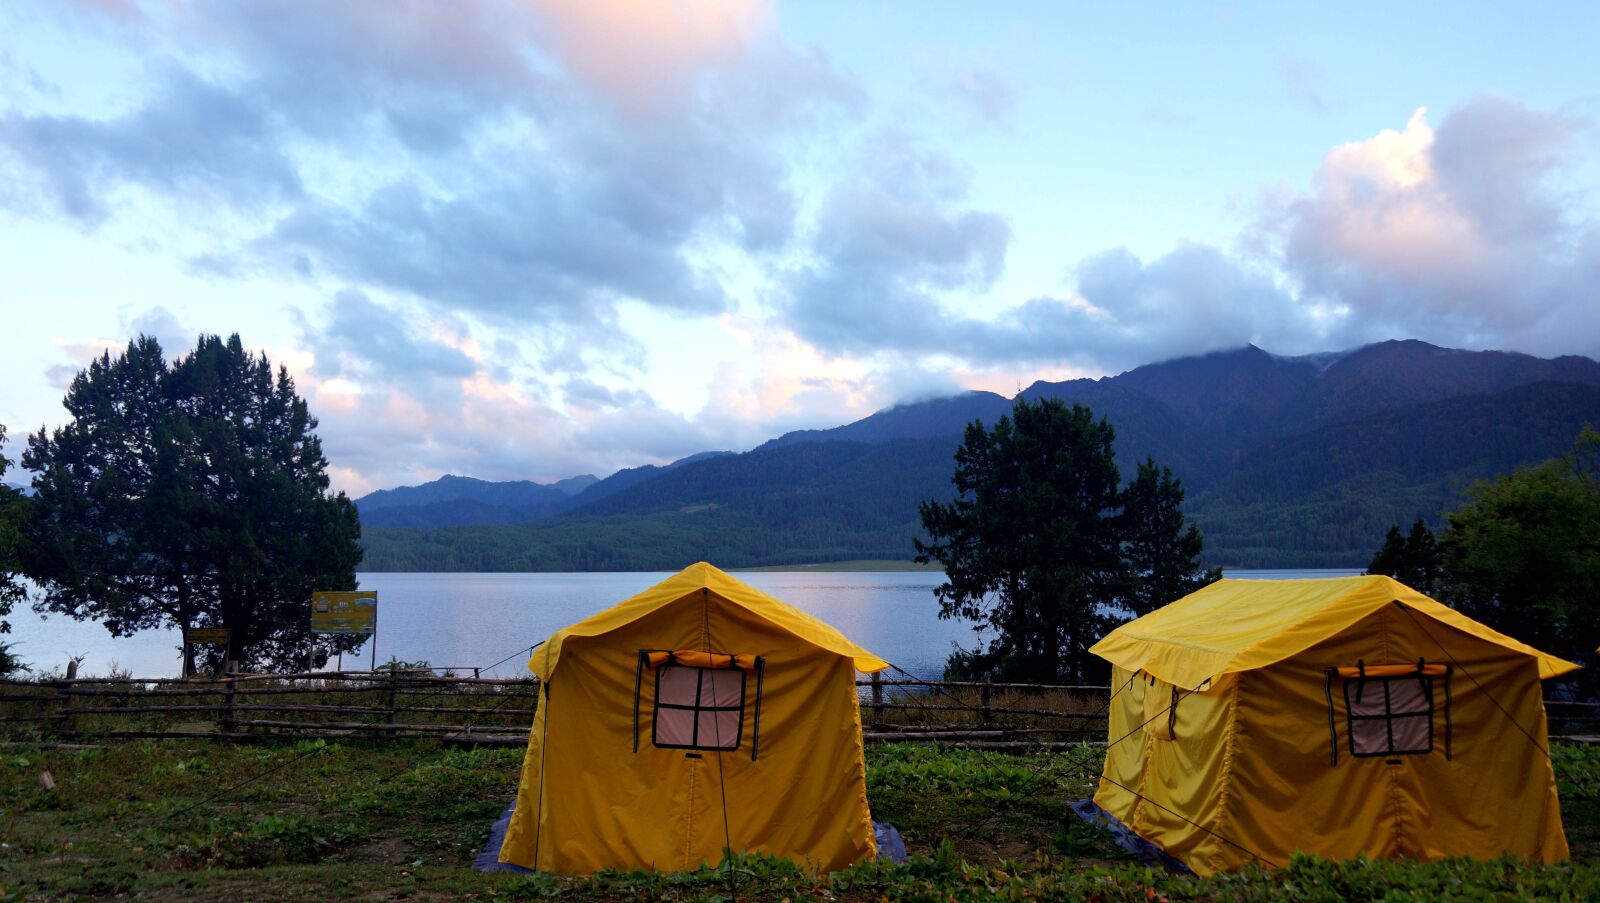 E 18-50mm F4-5.6 sample photo. Rara lake, nepal, natural photography